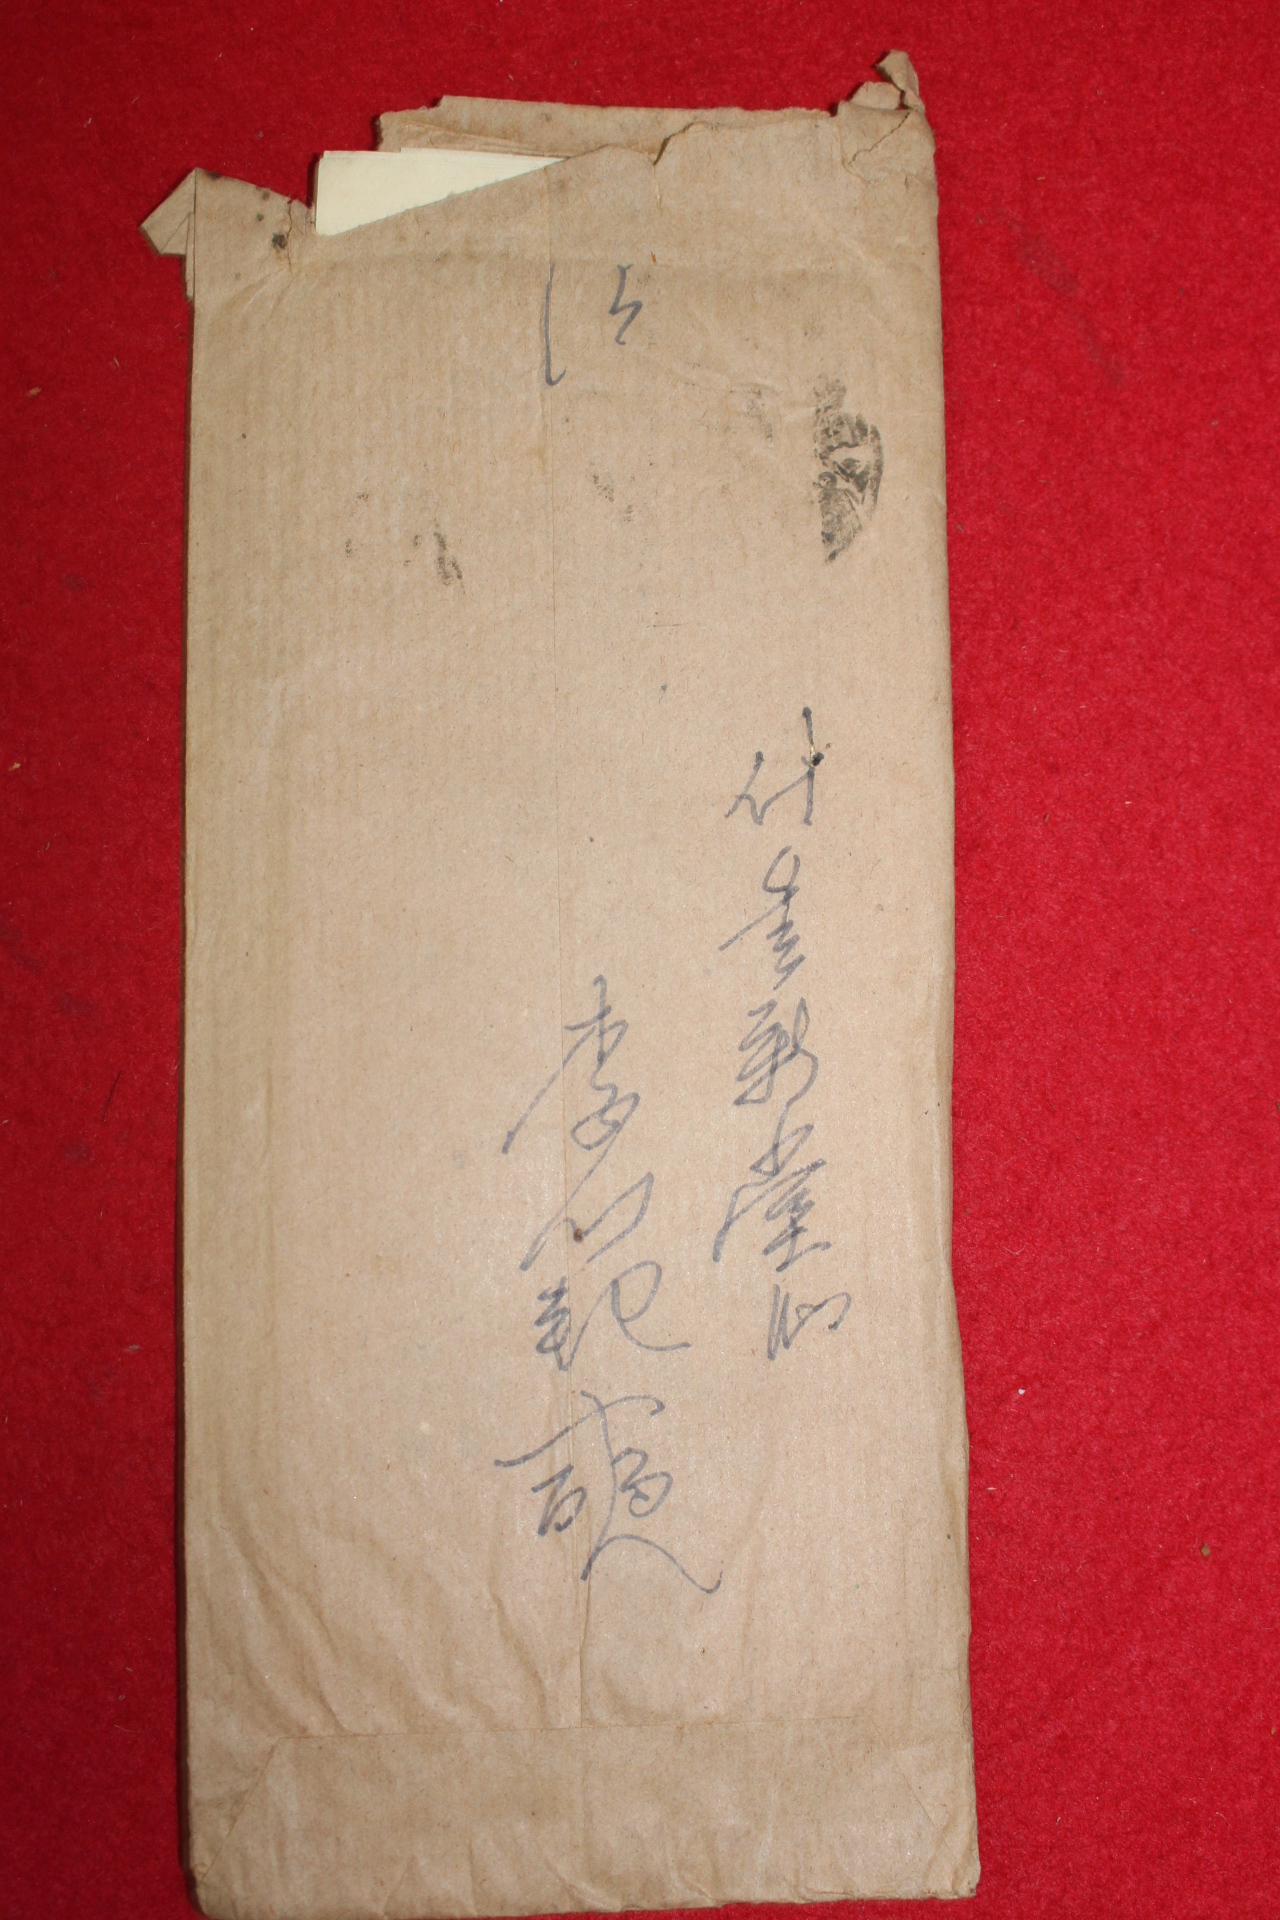 46-1956년 광복군참모장 독립운동가 이범석(李範奭)장군 우편사용실체(입후보 전단지수록)